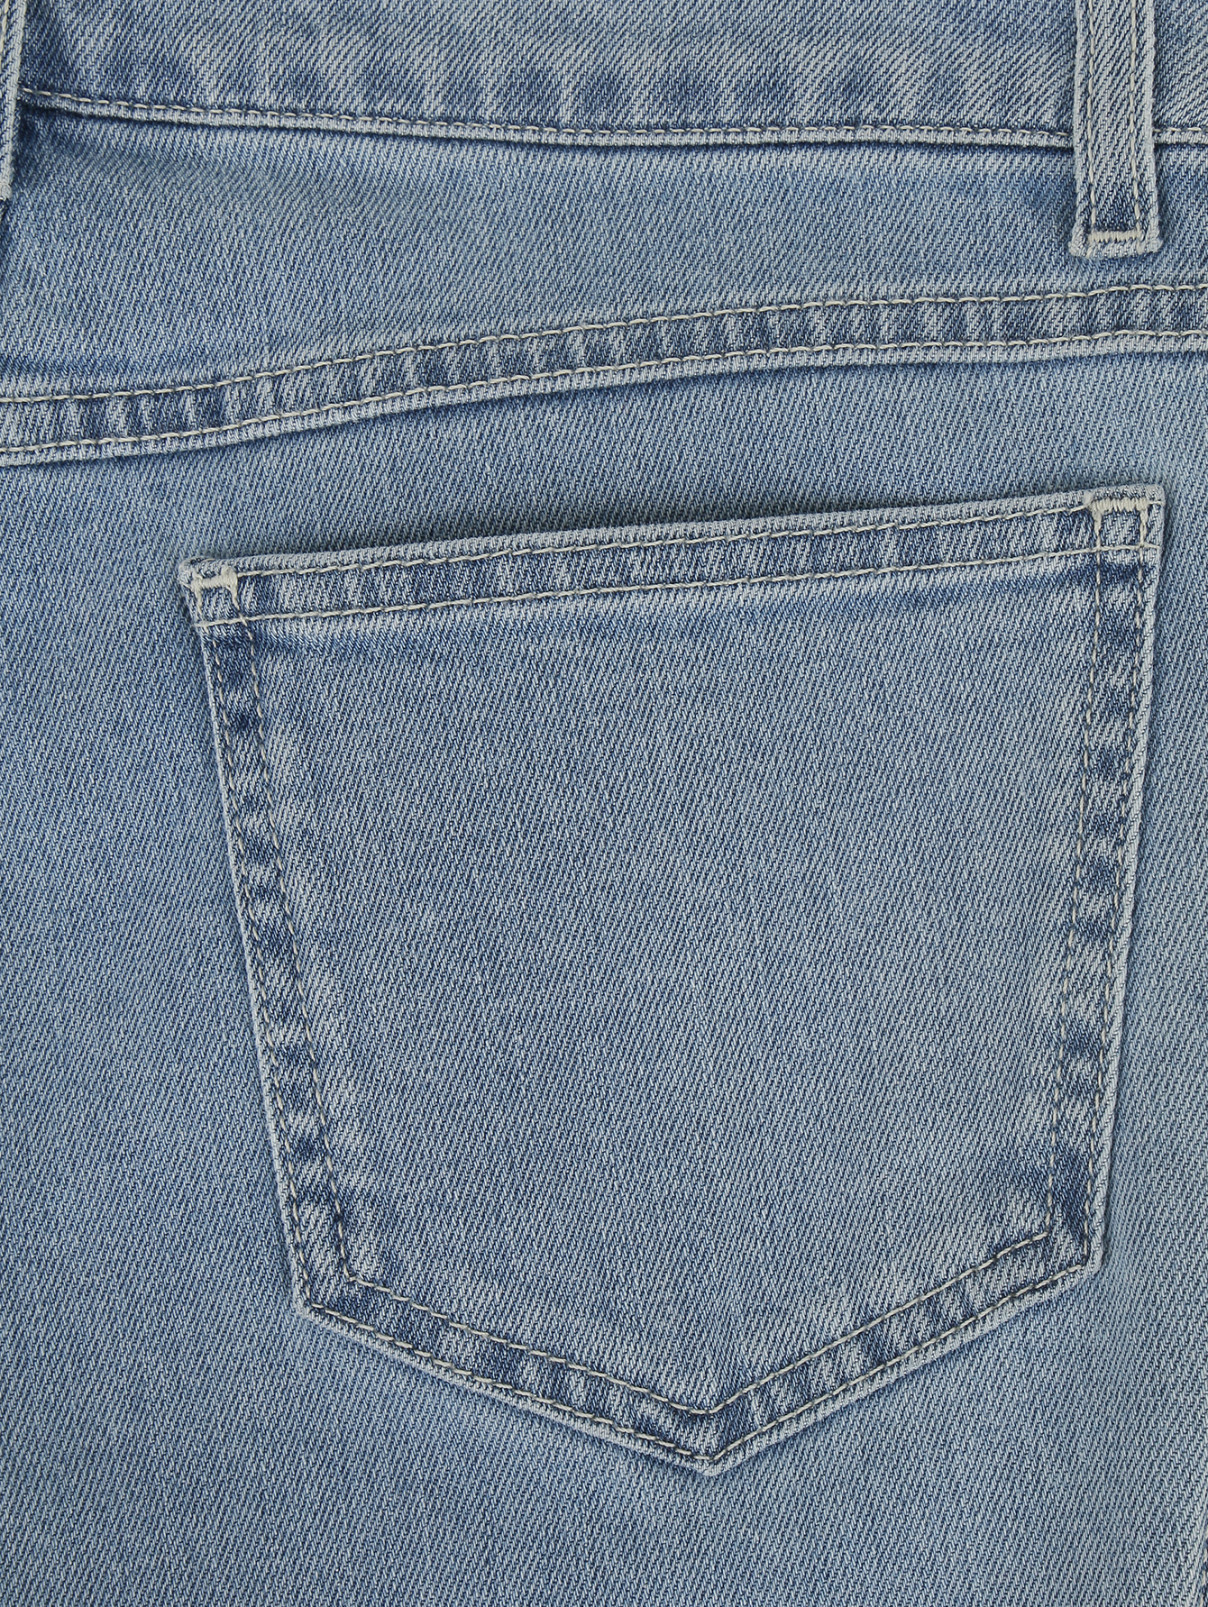 Расклешенные джинсы с декоративной отделкой из кристаллов Emanuel Ungaro  –  Деталь1  – Цвет:  Синий